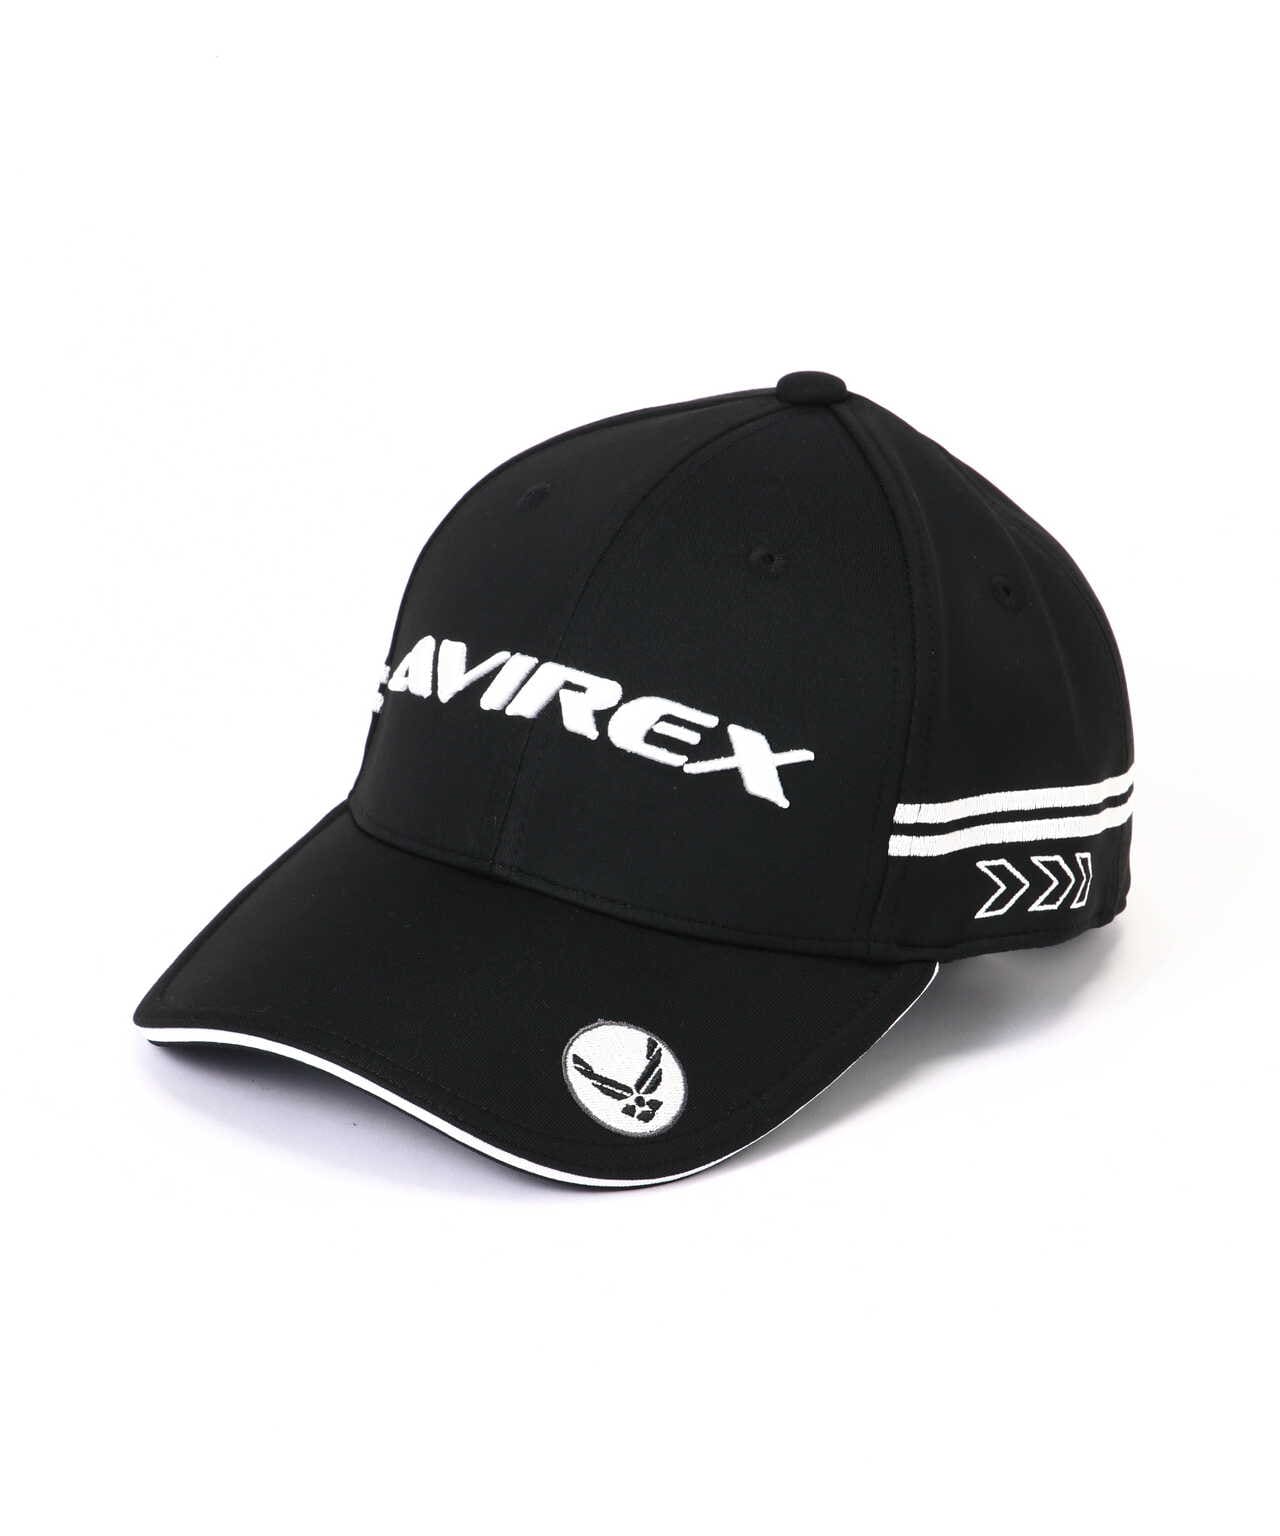 《AVIREX GOLF》ブーストパッド CAP/ゴルフ/キャップ